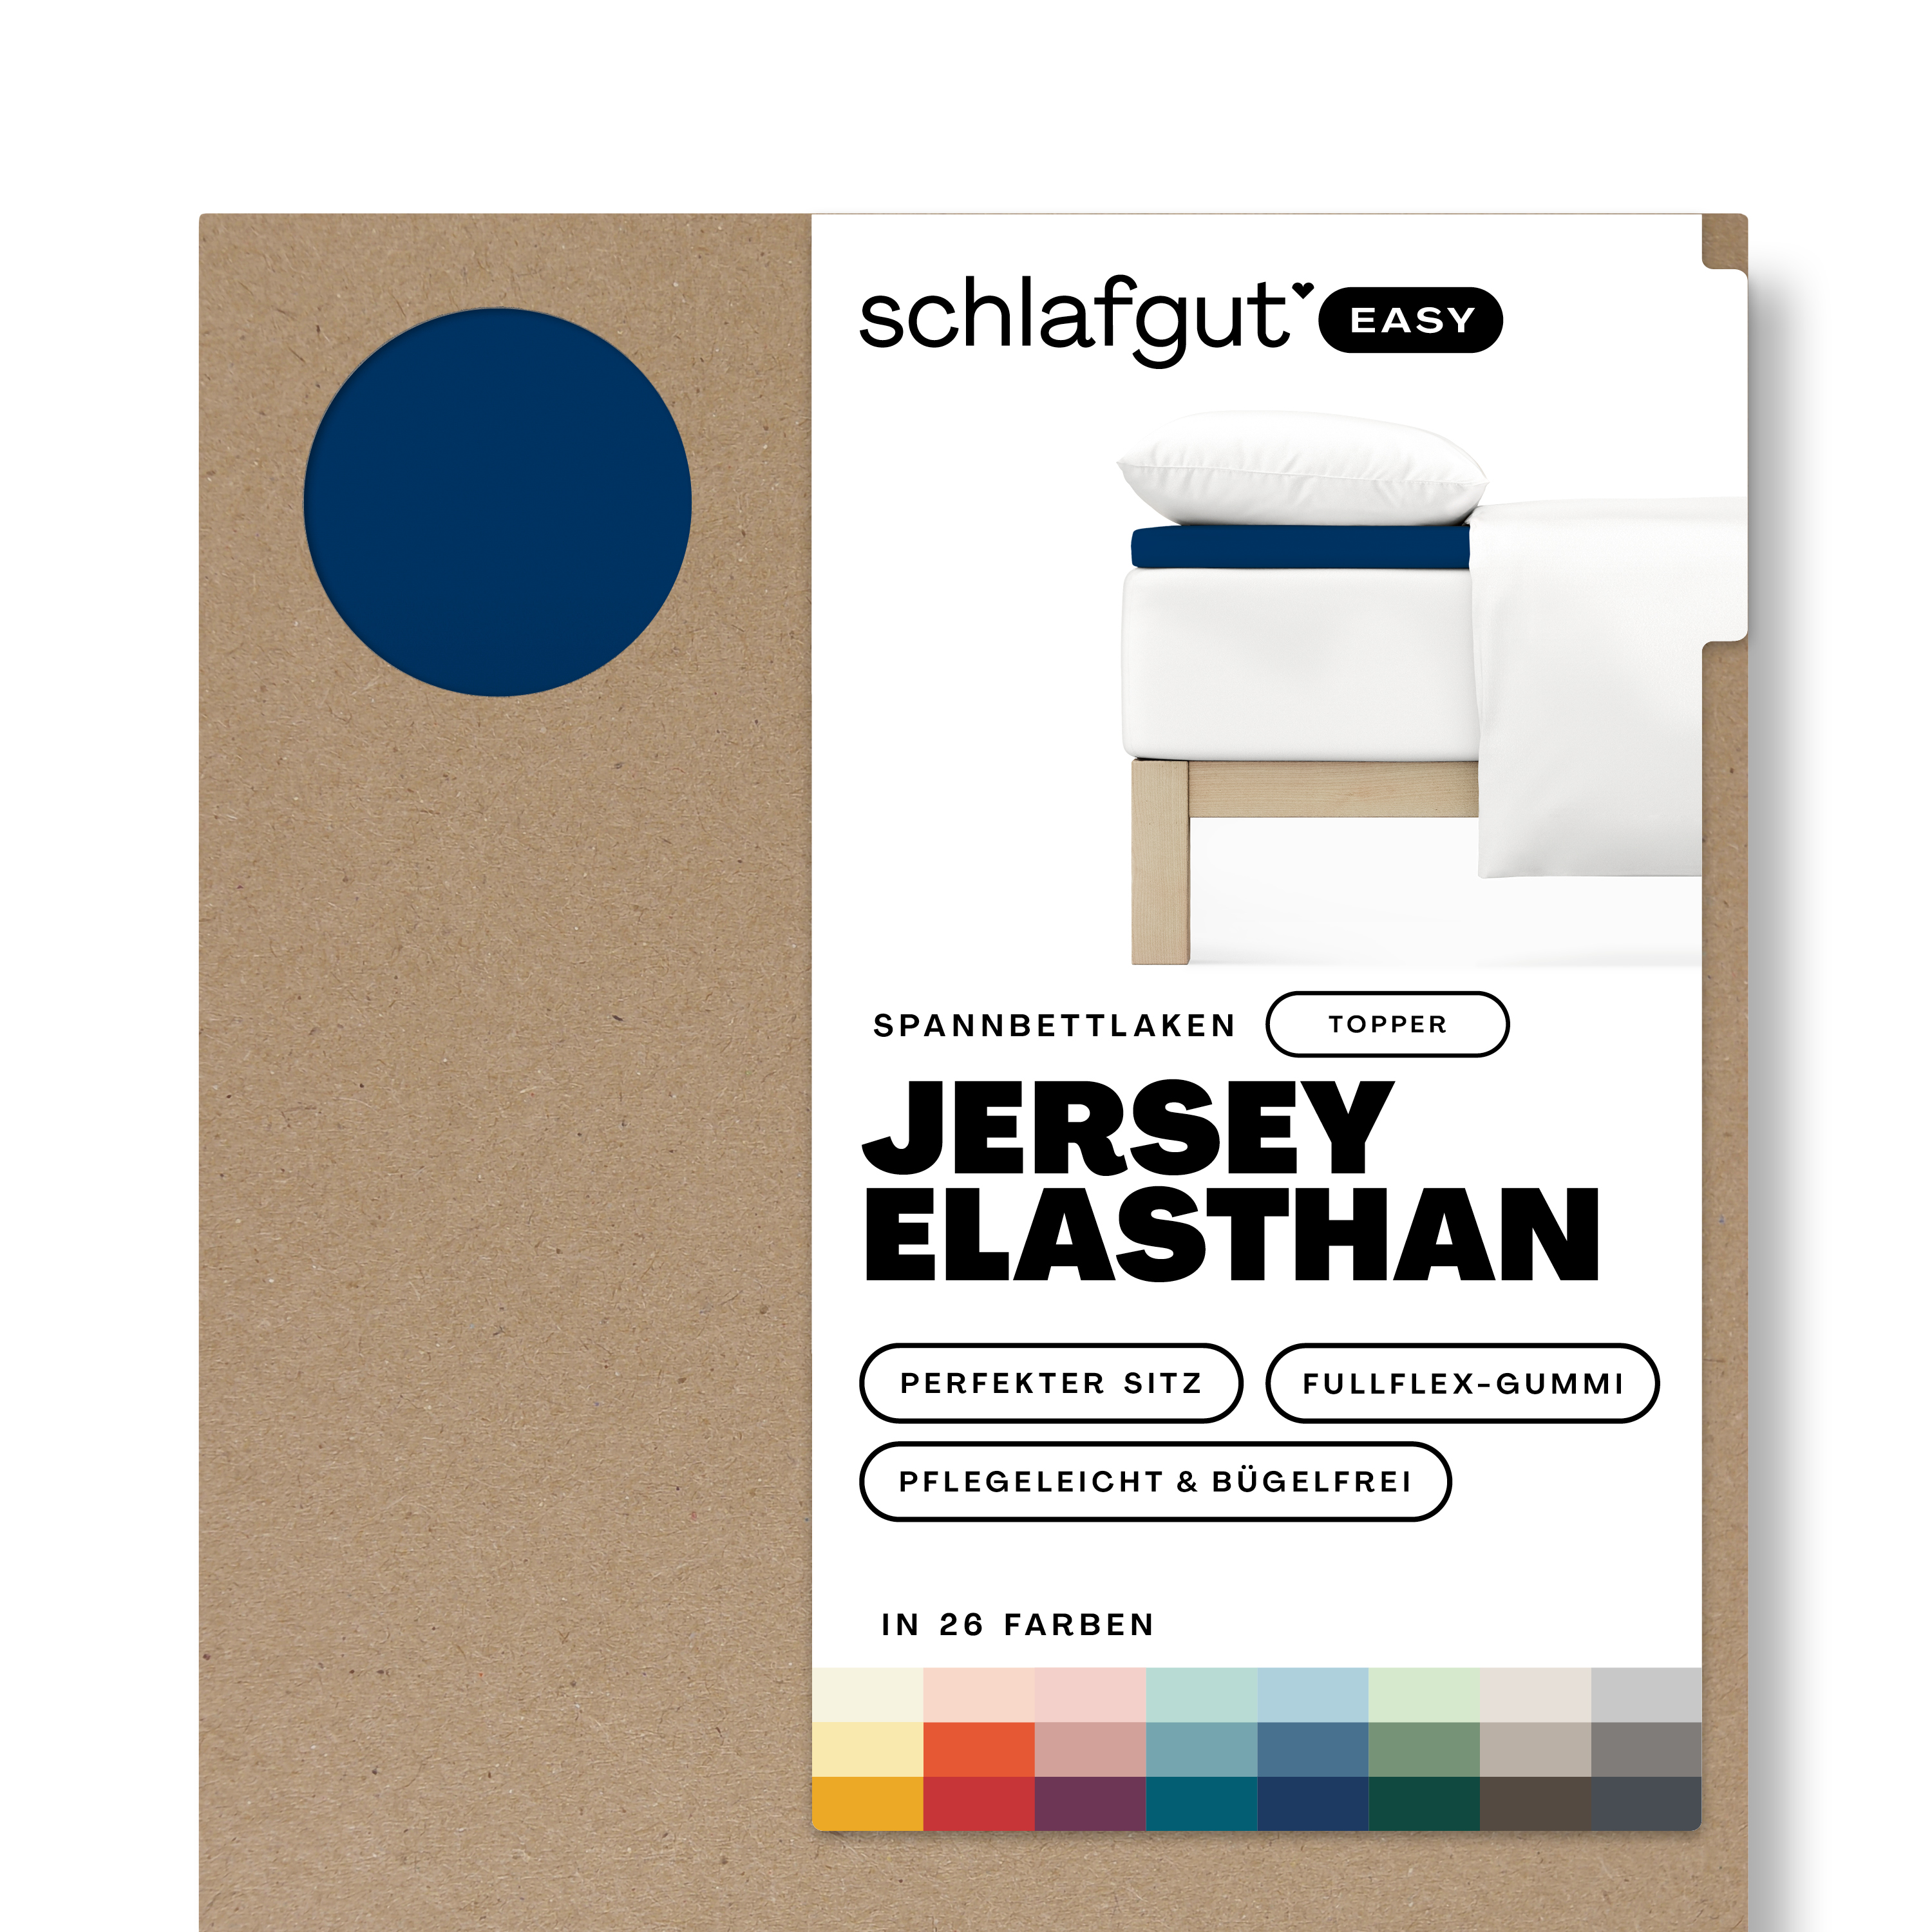 Das Produktbild vom Spannbettlaken der Reihe Easy Elasthan Topper in Farbe blue deep von Schlafgut